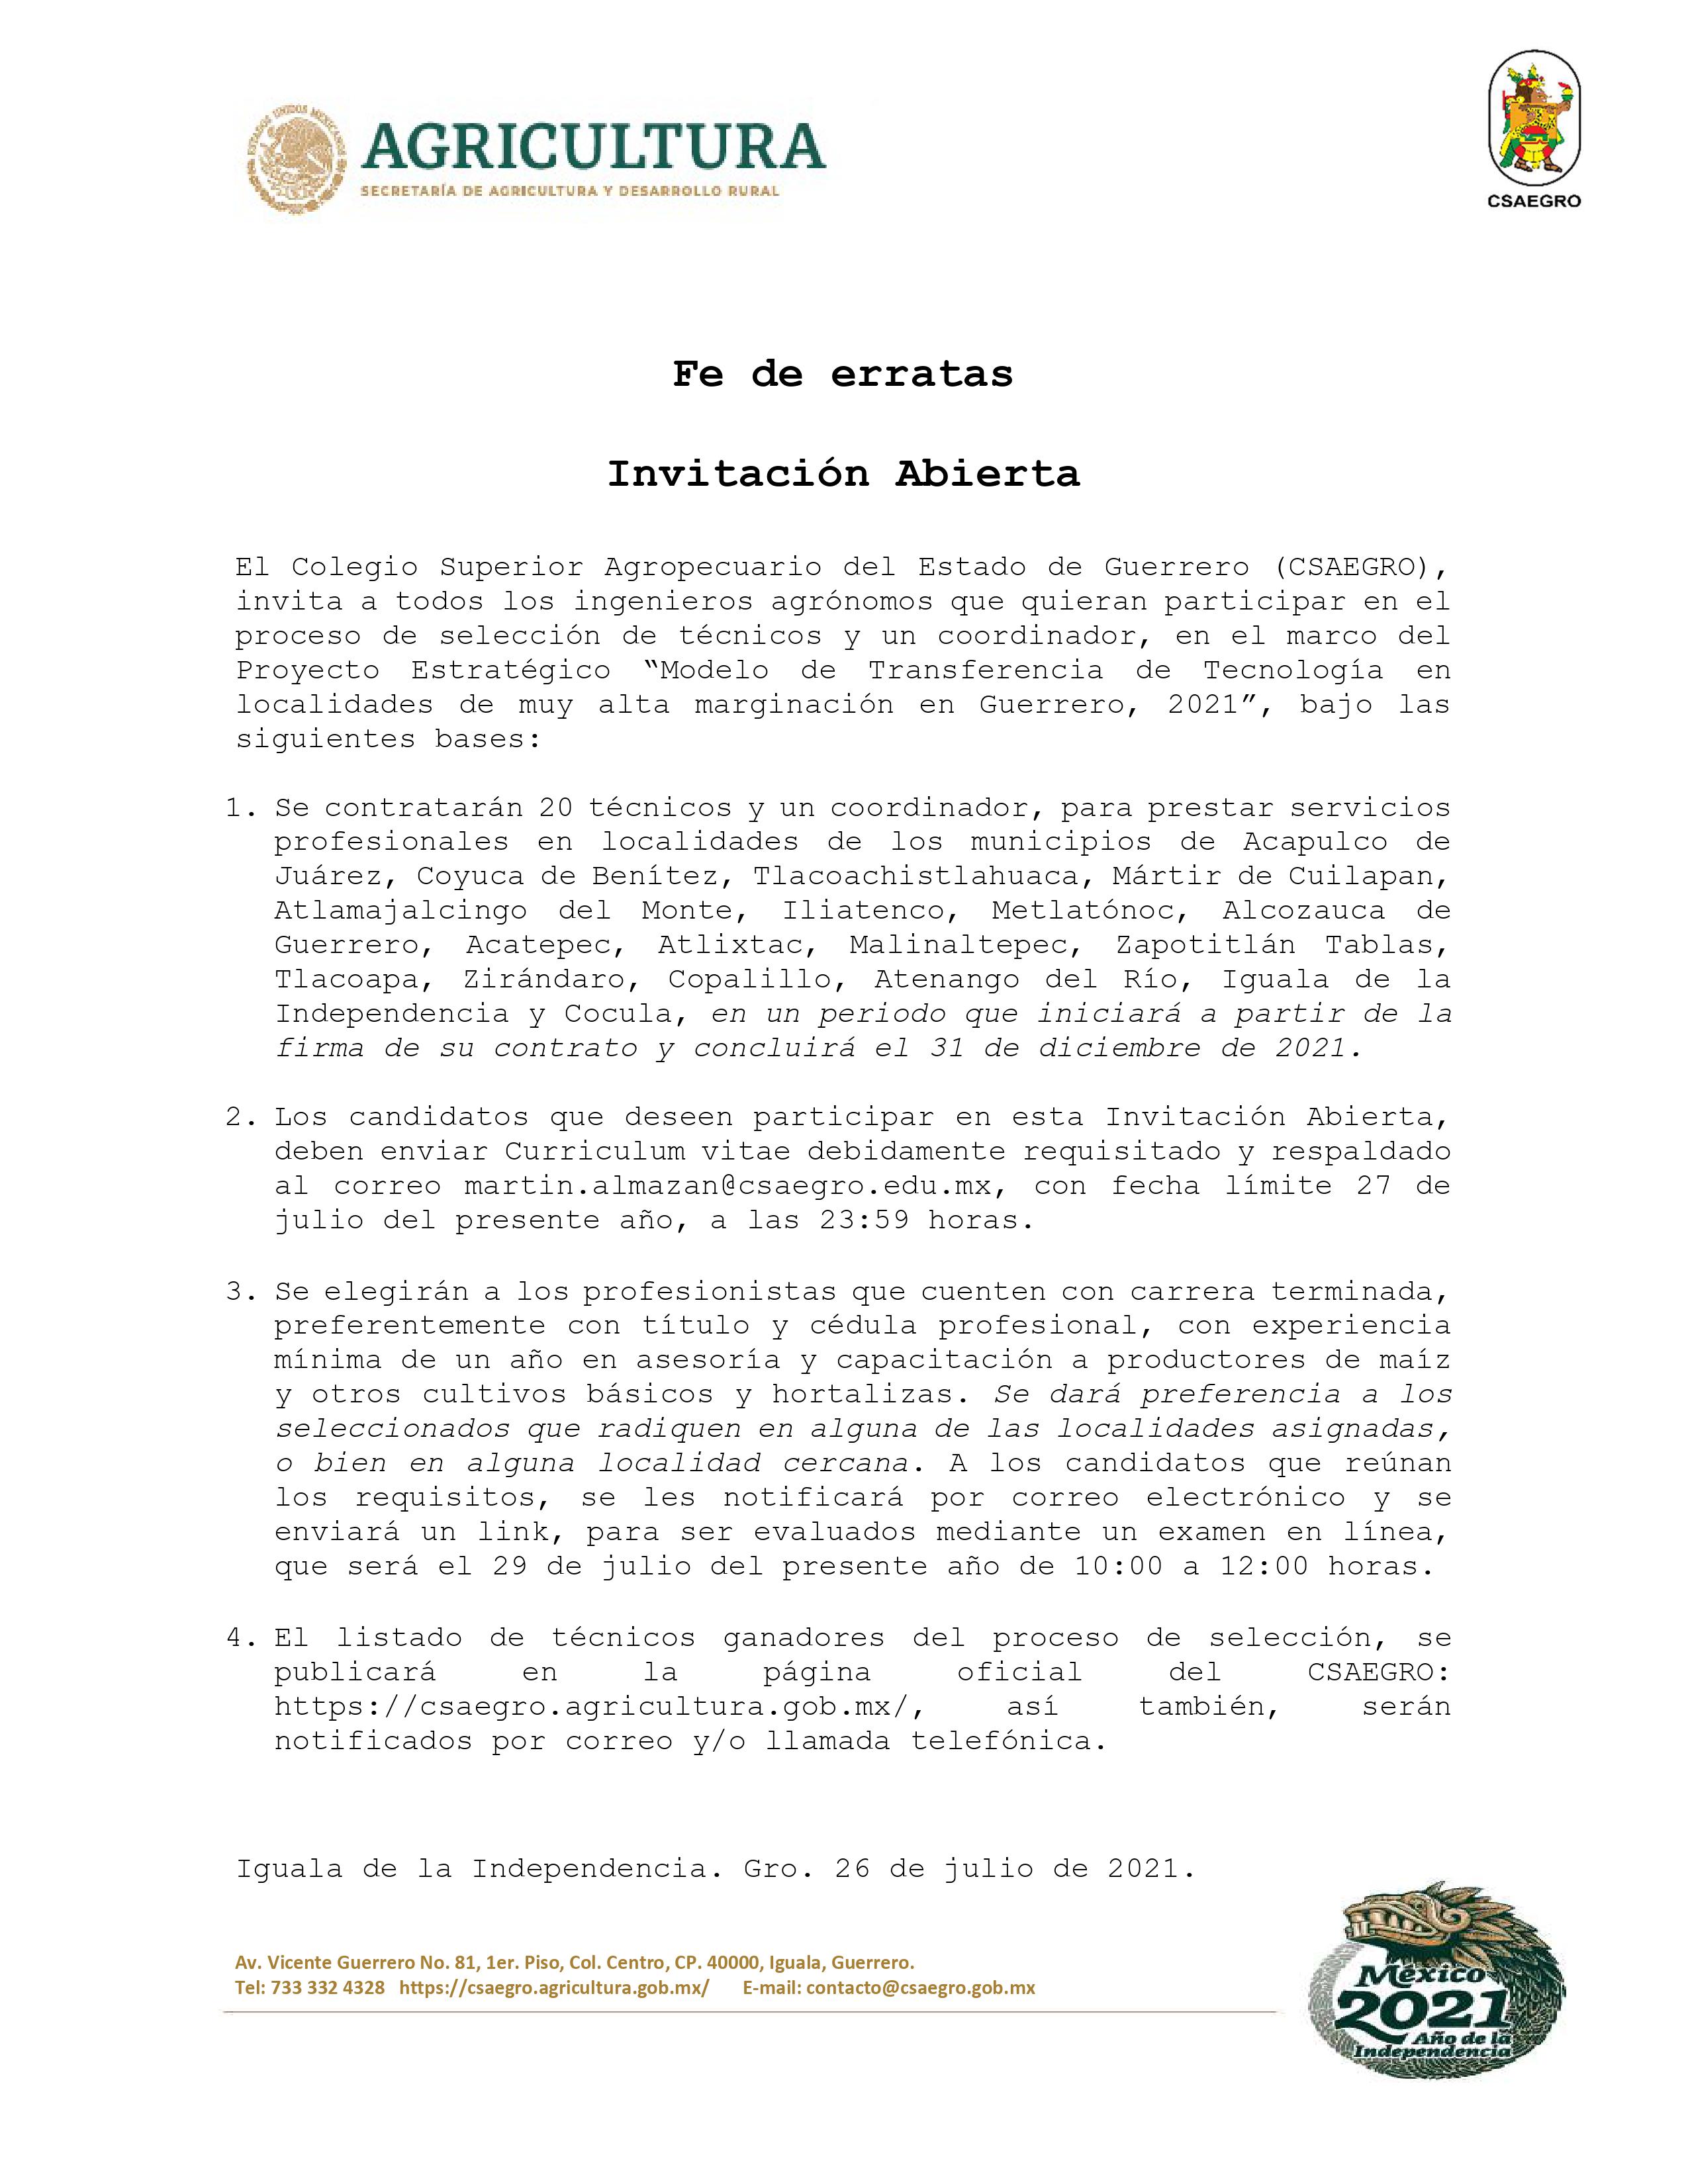 Invitación Abierta - Para el Proceso de selección del “Modelo de Transferencia de Tecnología en localidades de muy alta marginación en Guerrero 2021”  Fe de Erratas